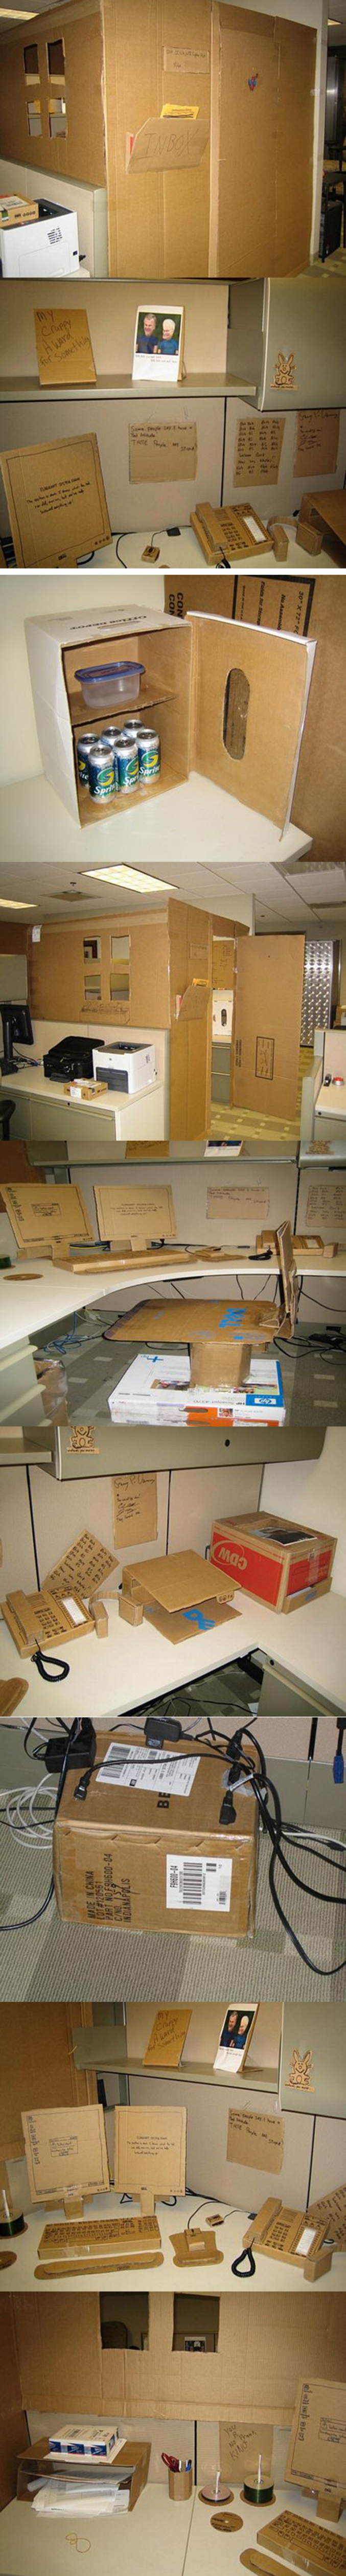 Un bureau entièrement réalisé en carton.